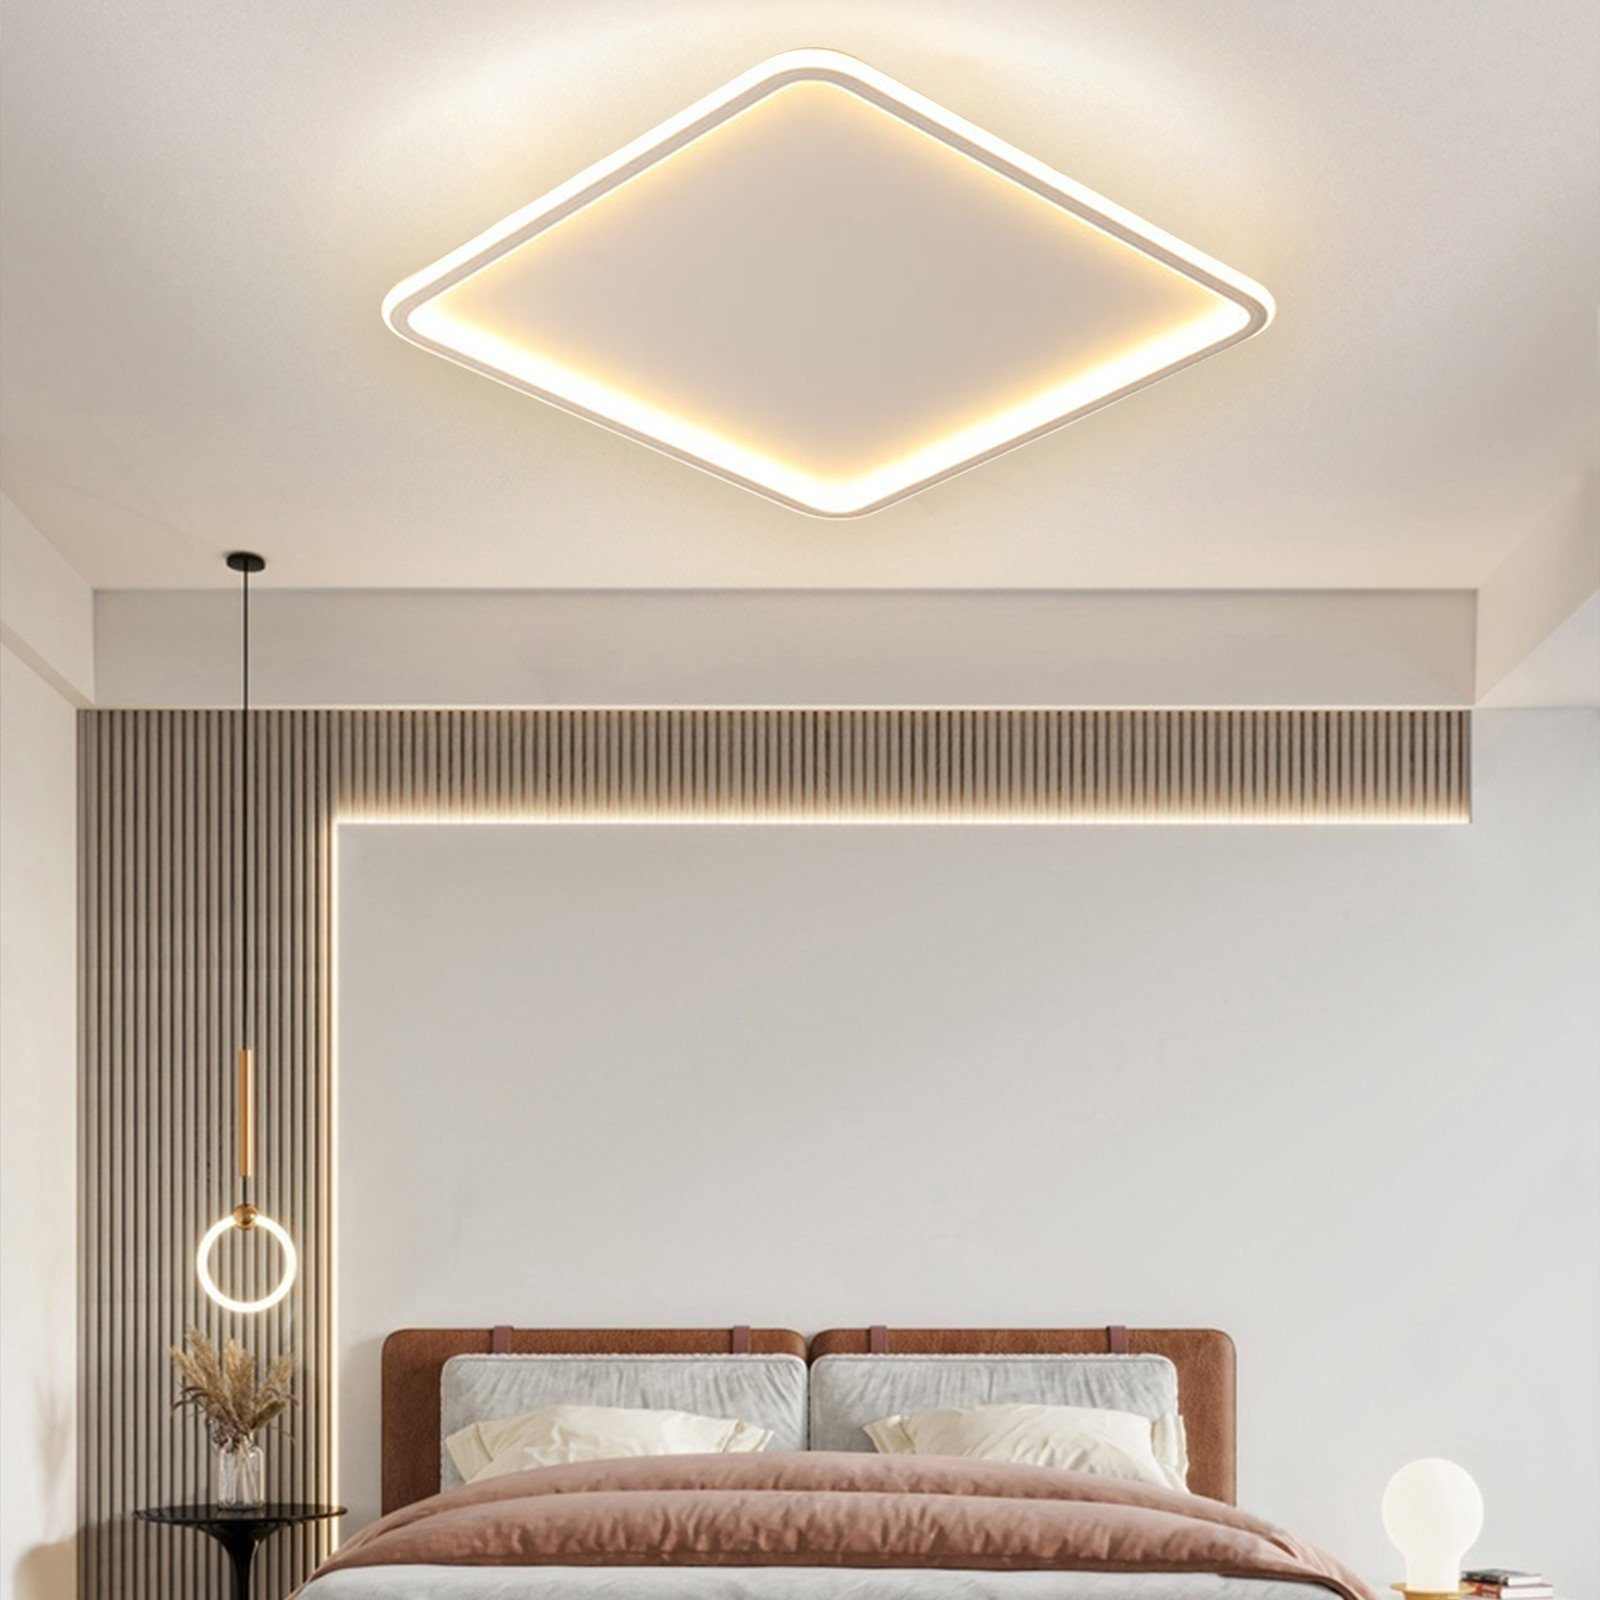 Wohnzimmerlampe Modern Deckenleuchten Dimmbar Neutralweiß,Warmweiß,Kaltweiß, Weiß integriert, dimmbar Deckenlampe stufenlos Daskoo 54W LED Deckenleuchte LED fest Fernbedienung,